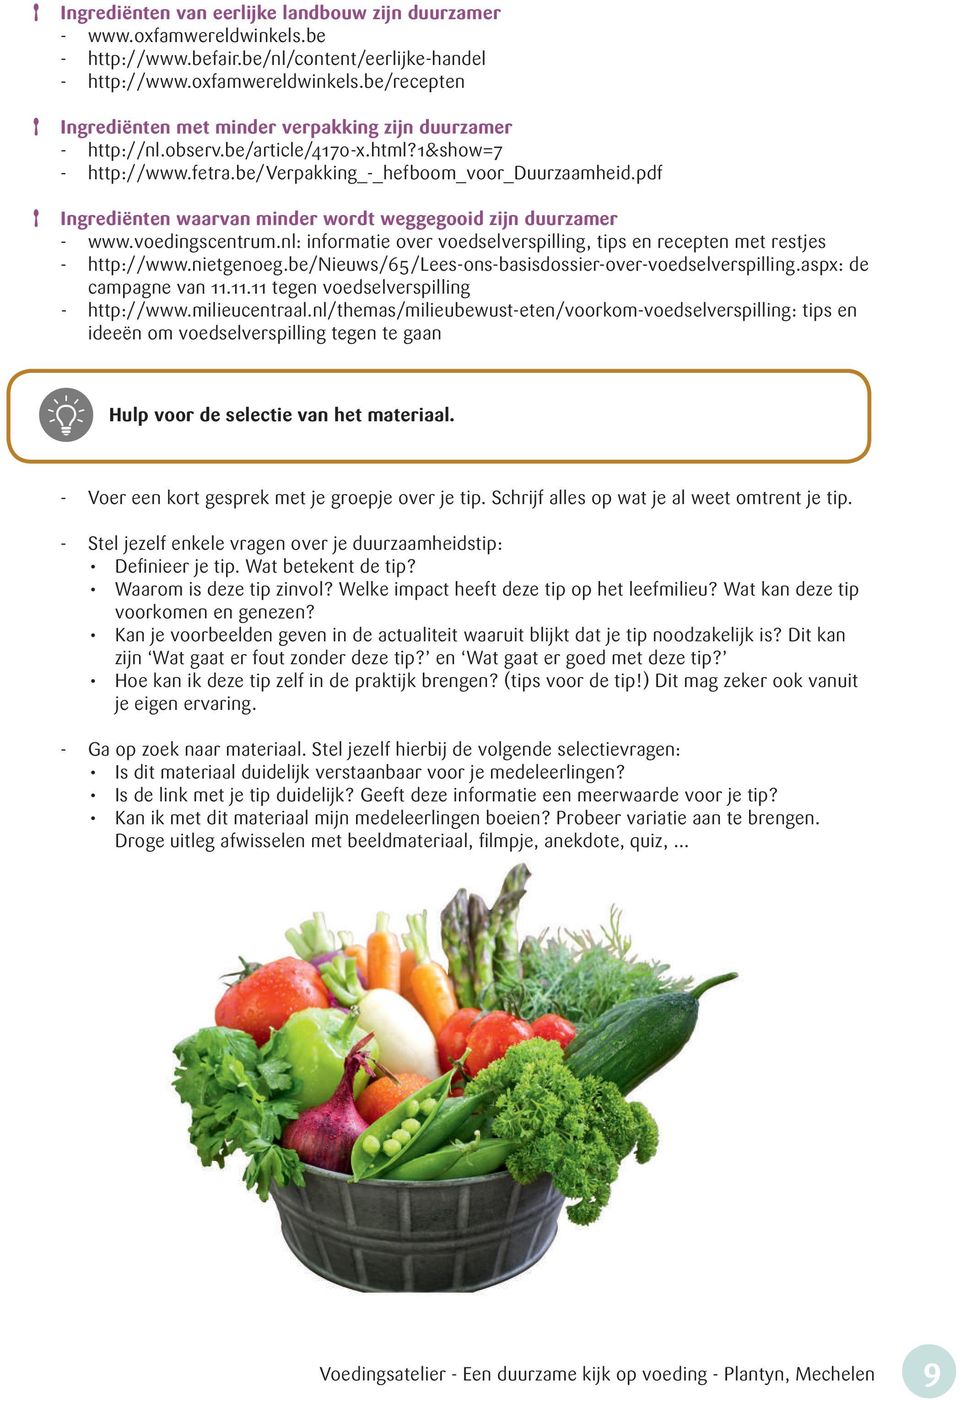 nl: informatie over voedselverspilling, tips en recepten met restjes - http://www.nietgenoeg.be/nieuws/65/lees-ons-basisdossier-over-voedselverspilling.aspx: de campagne van 11.